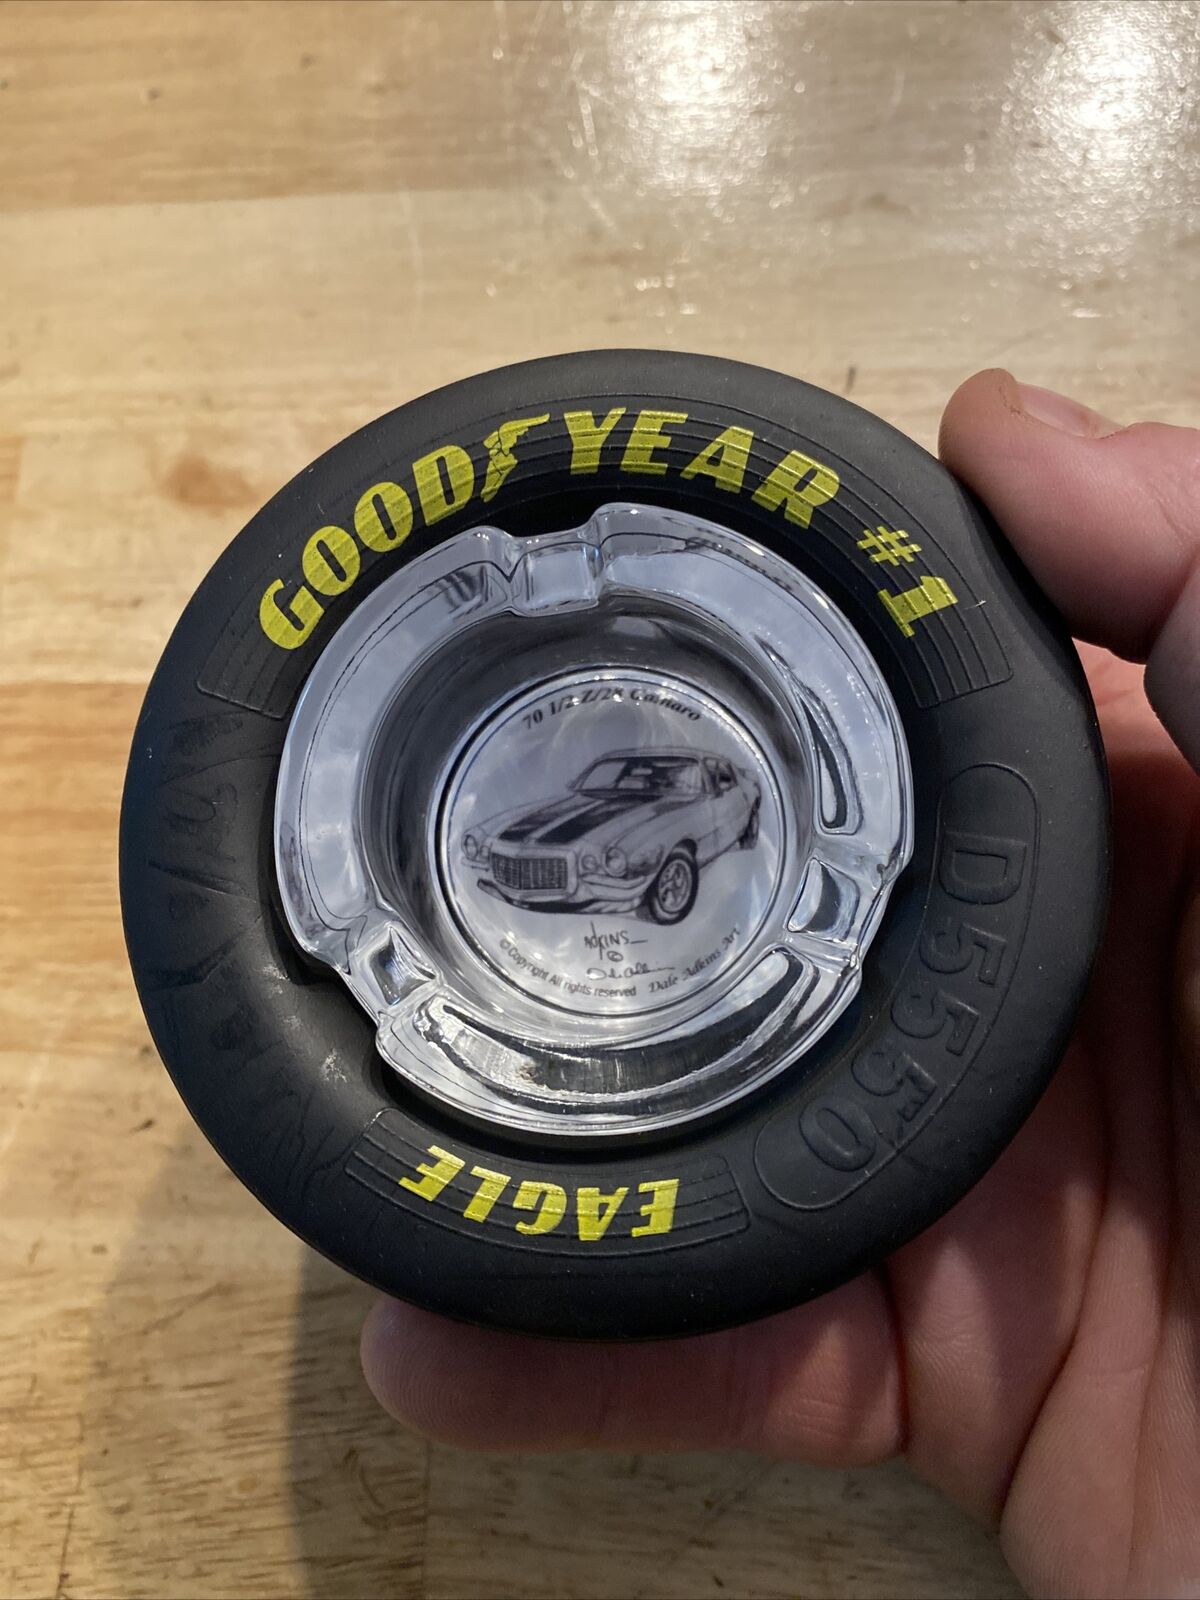 Goodyear Tires AshTray Chevy Camaro NASCAR Rubber Cigar Michelin Collector GIFT